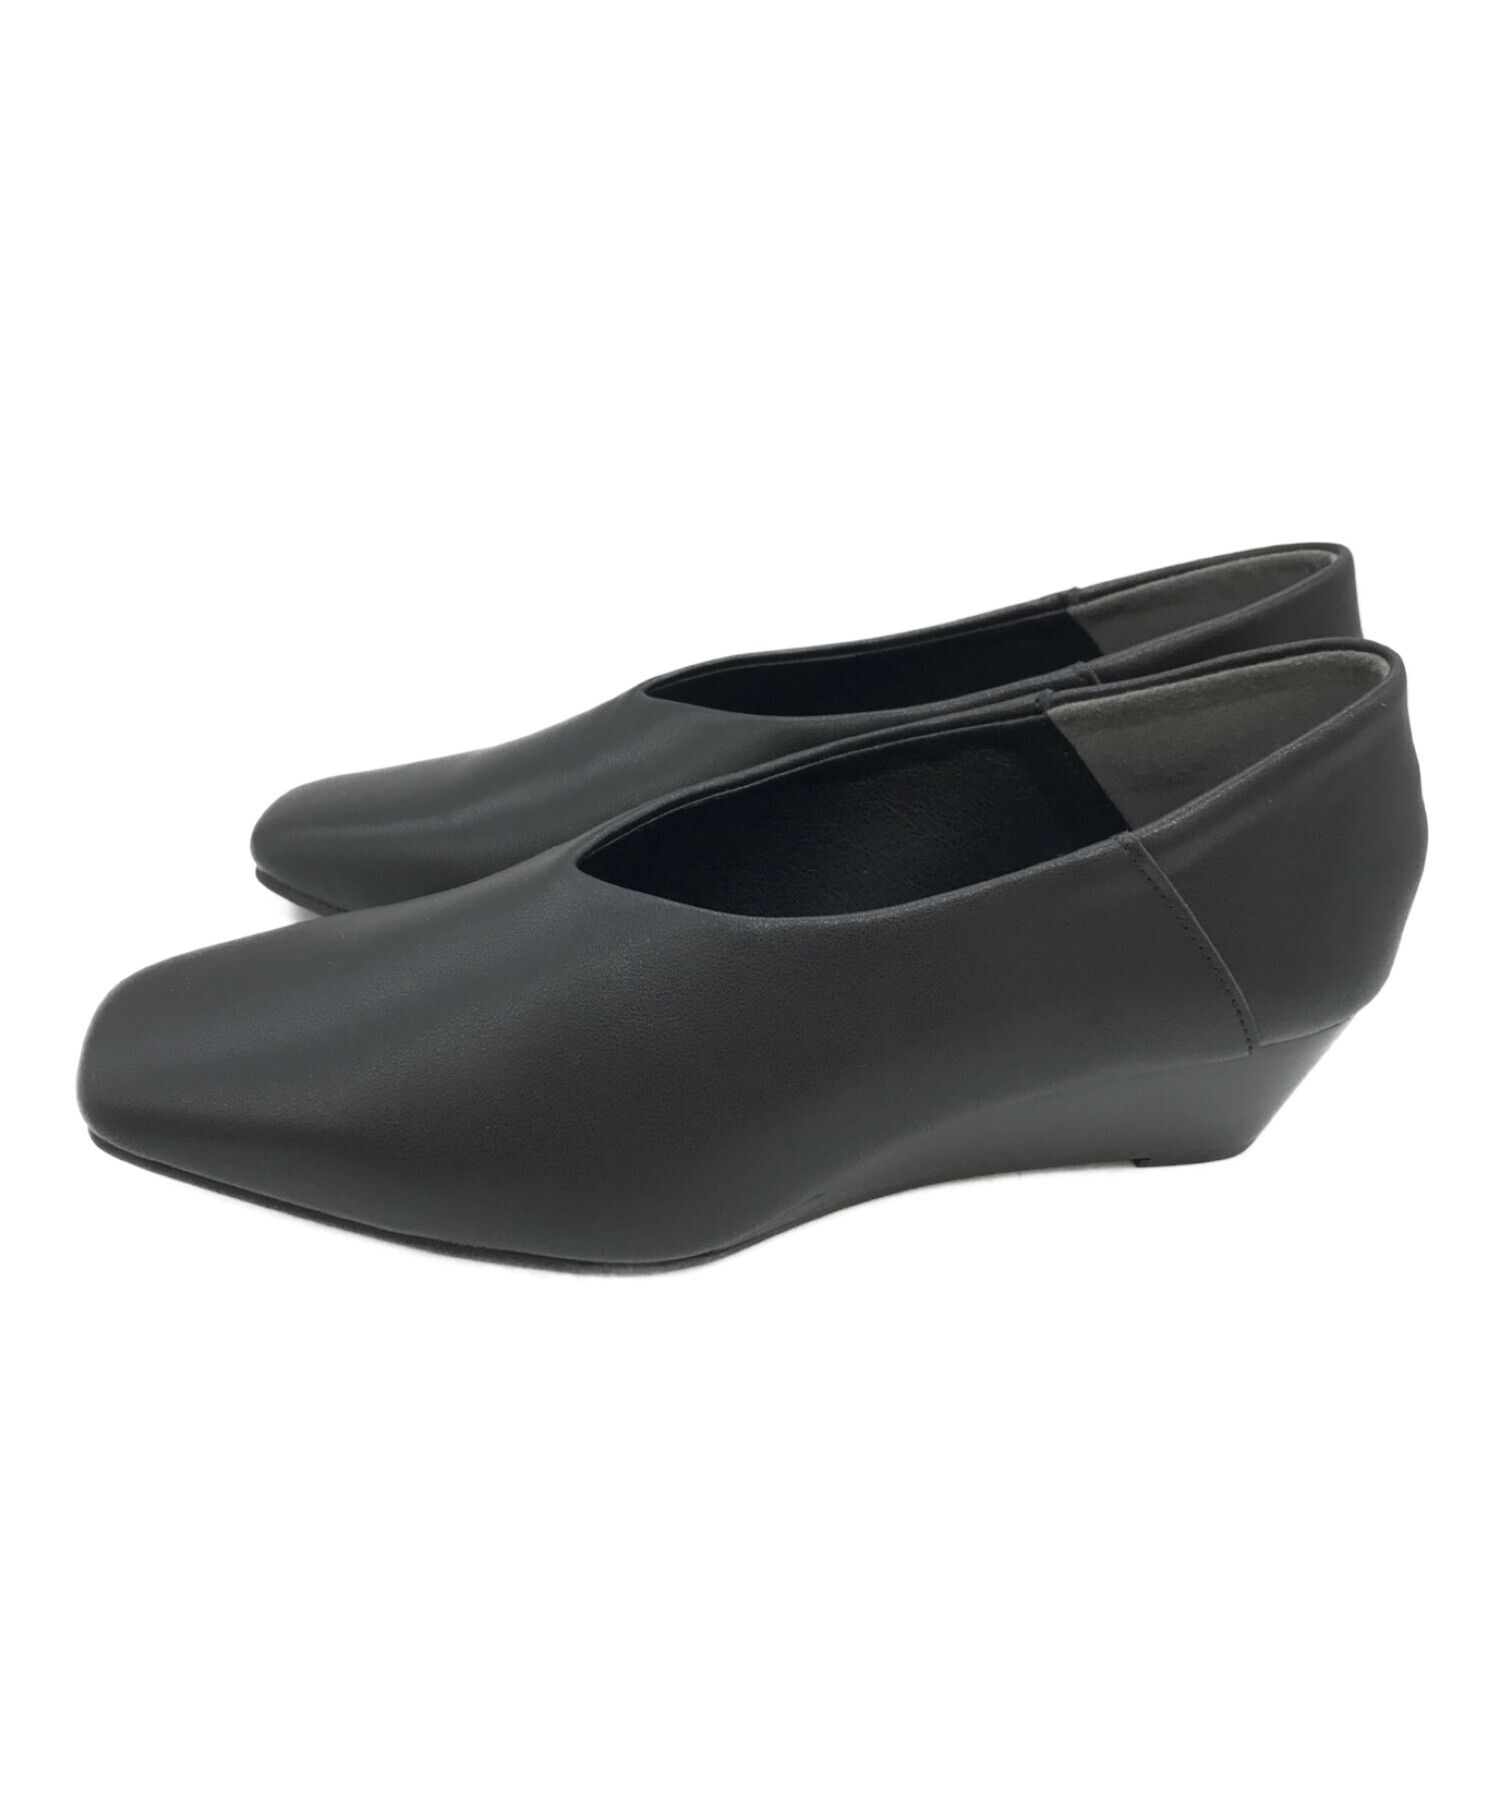 RIM.ARK (リムアーク) Angled heel square shoes ブラック サイズ:39